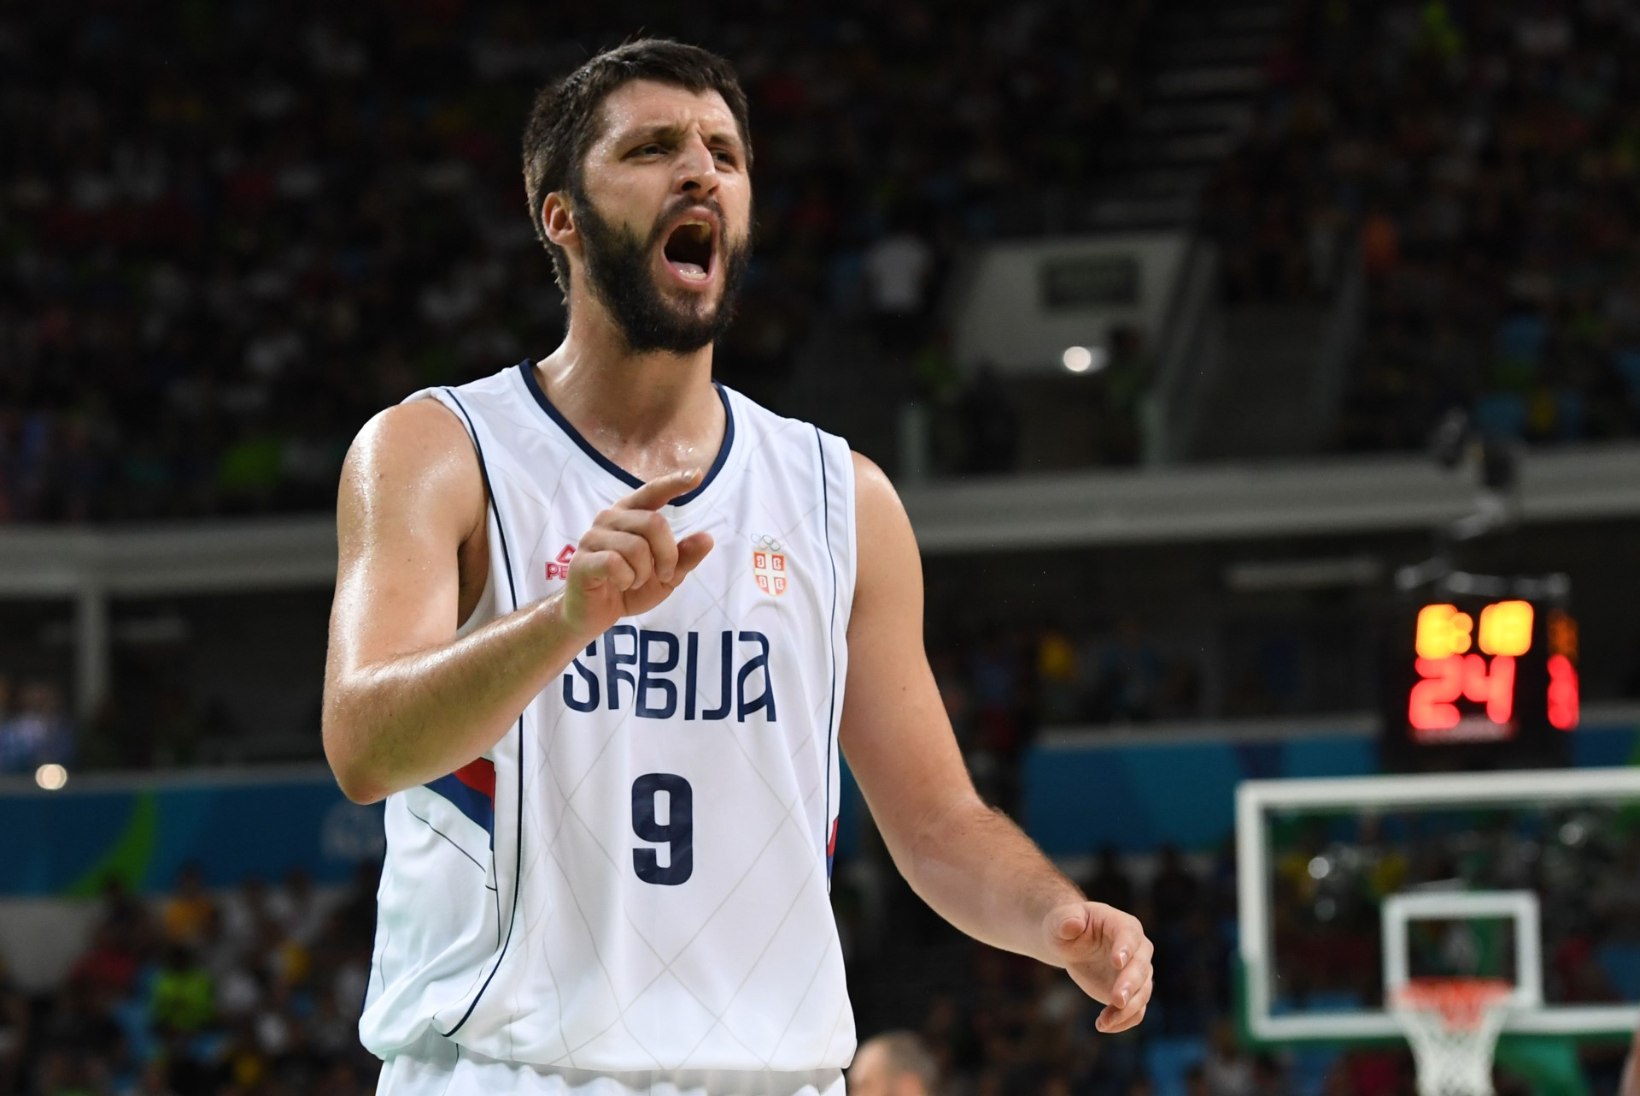 Himkisse siirdunud Serbia korvpallur: terve Euroliiga hingab kergendatult, kui Teodosic läheks NBAsse